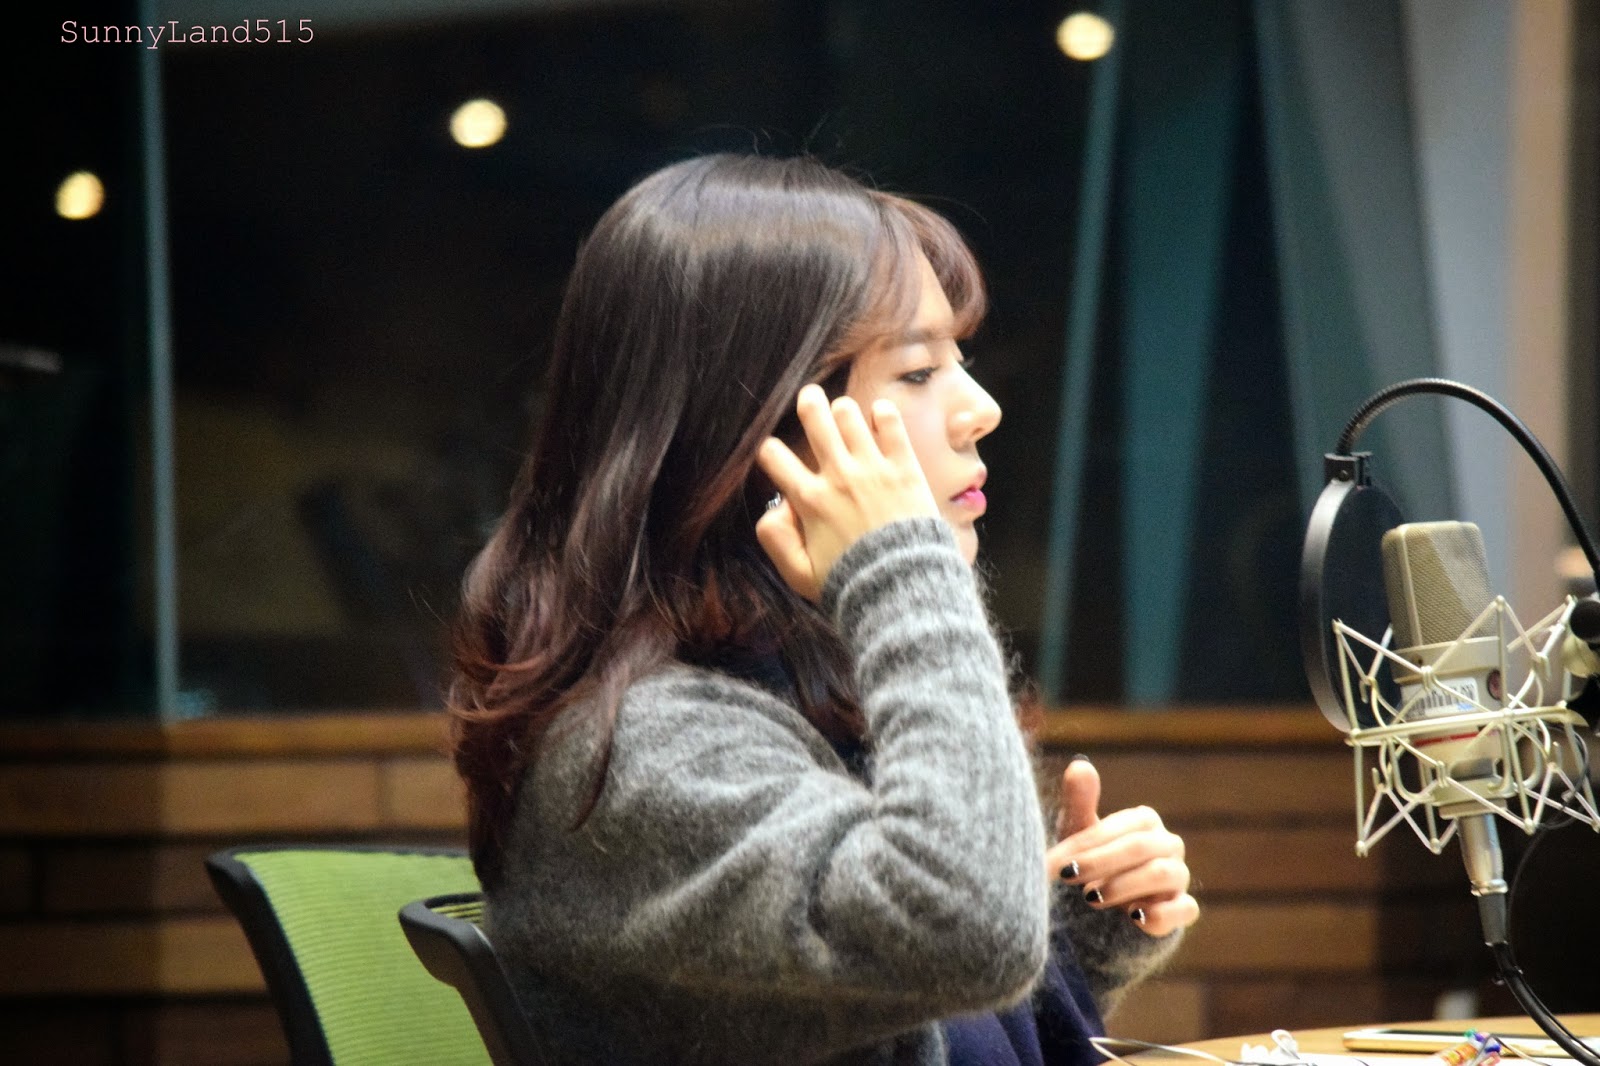 [OTHER][06-02-2015]Hình ảnh mới nhất từ DJ Sunny tại Radio MBC FM4U - "FM Date" - Page 10 DSC_0210_Fotor